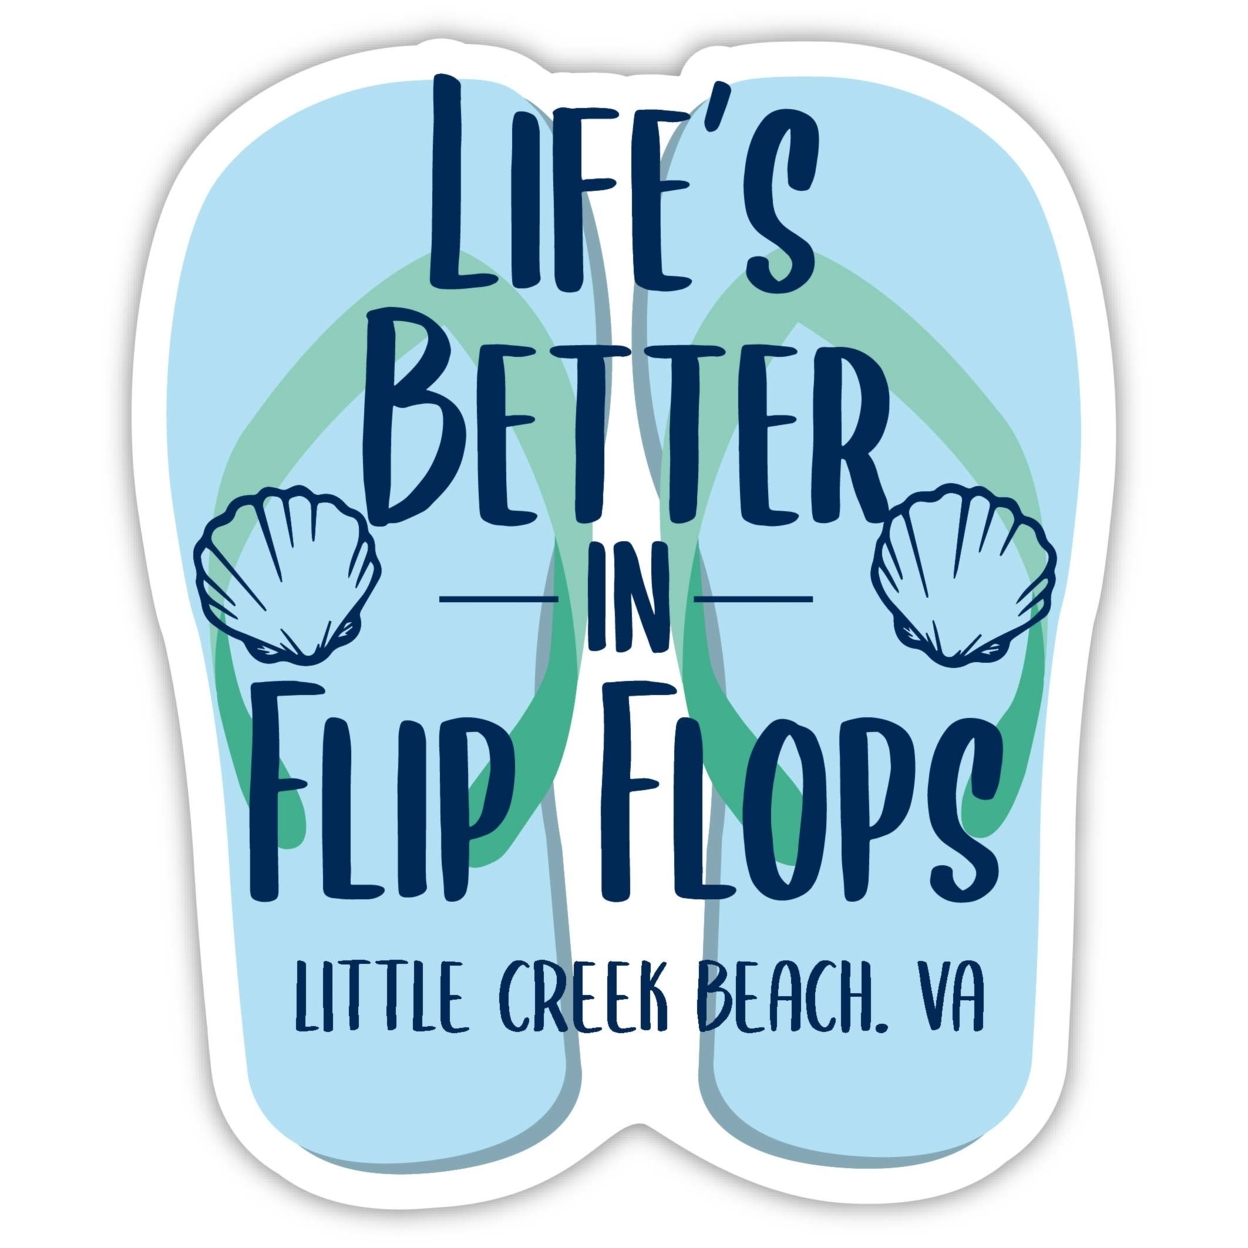 Little Creek Beach Virginia Souvenir 4 Inch Vinyl Decal Sticker Flip Flop Design